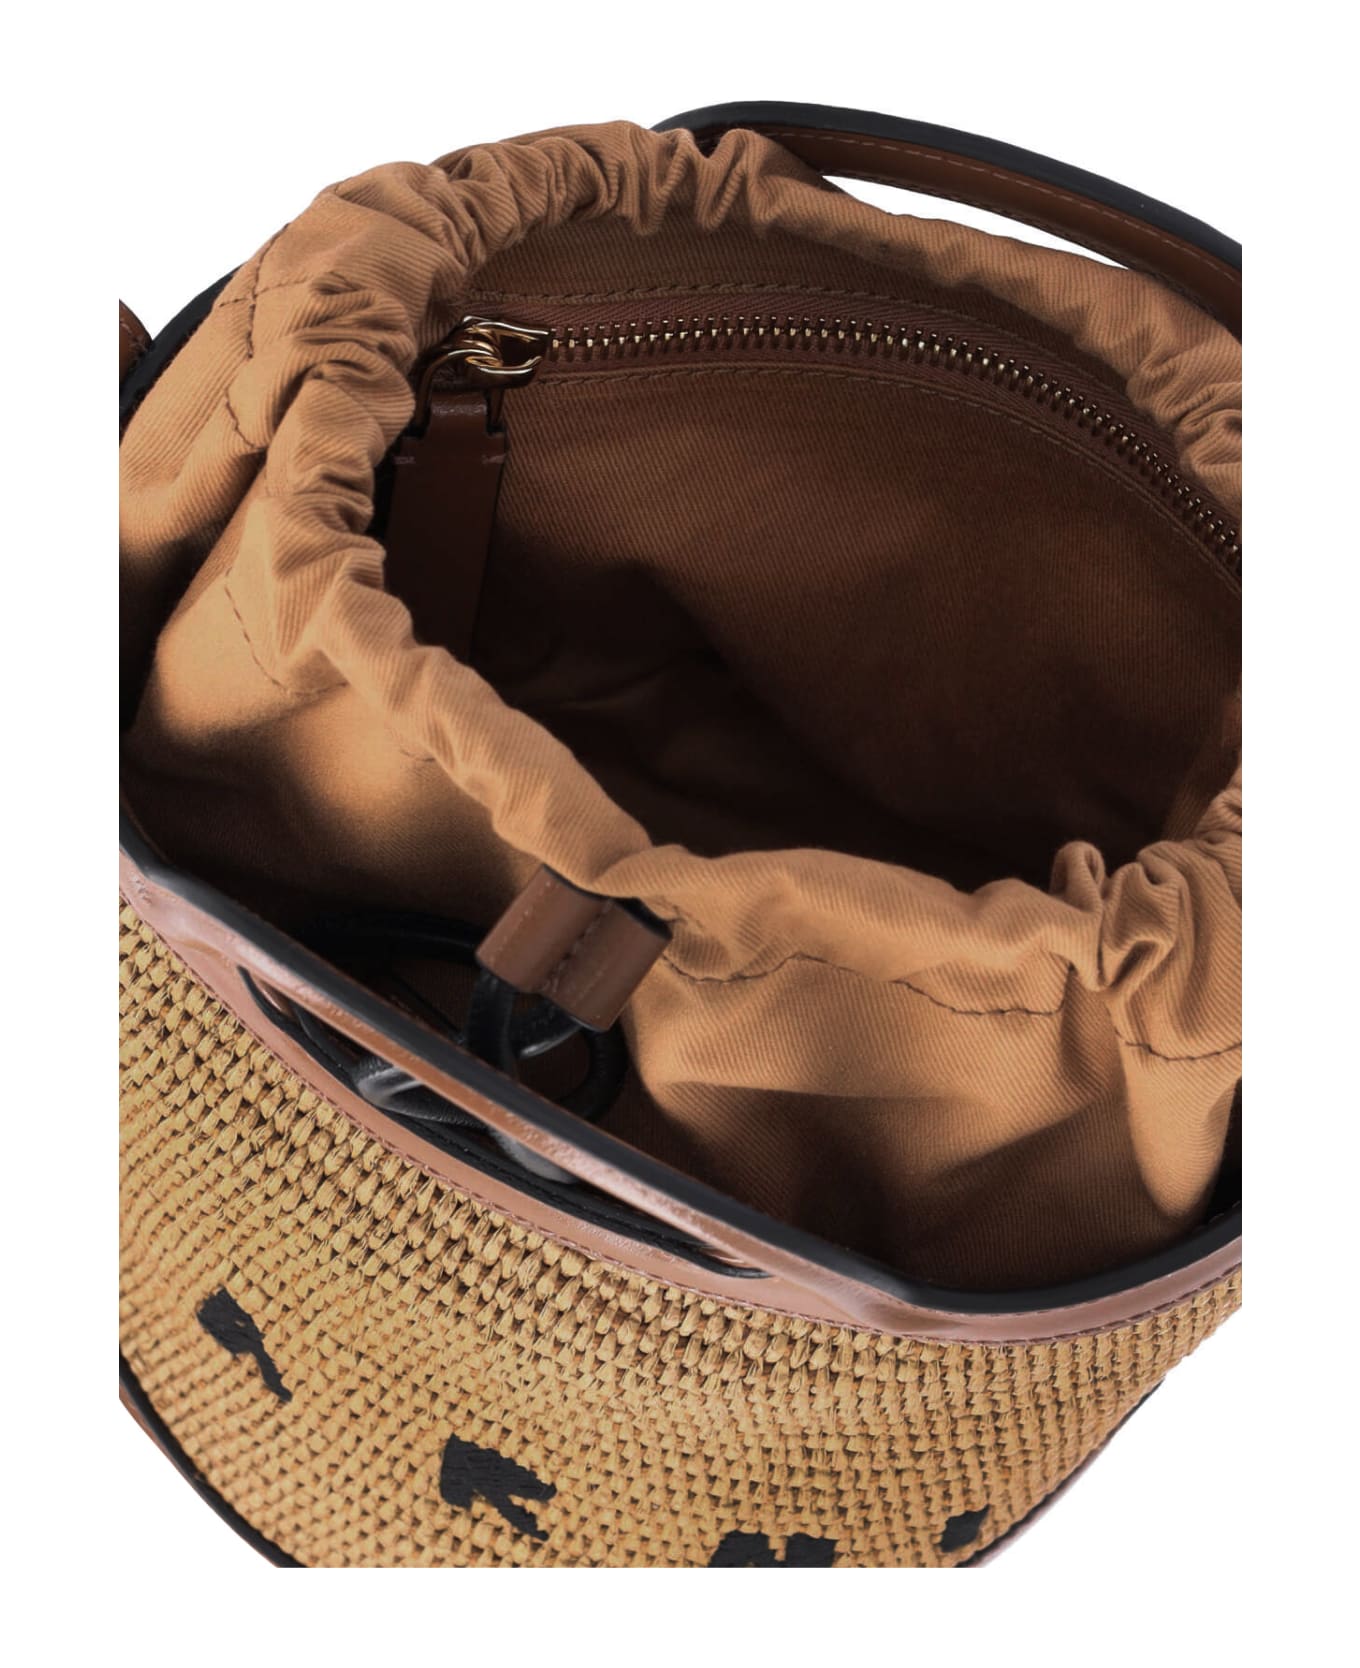 Marni Bucket Bag 'tropicalia' - Brown